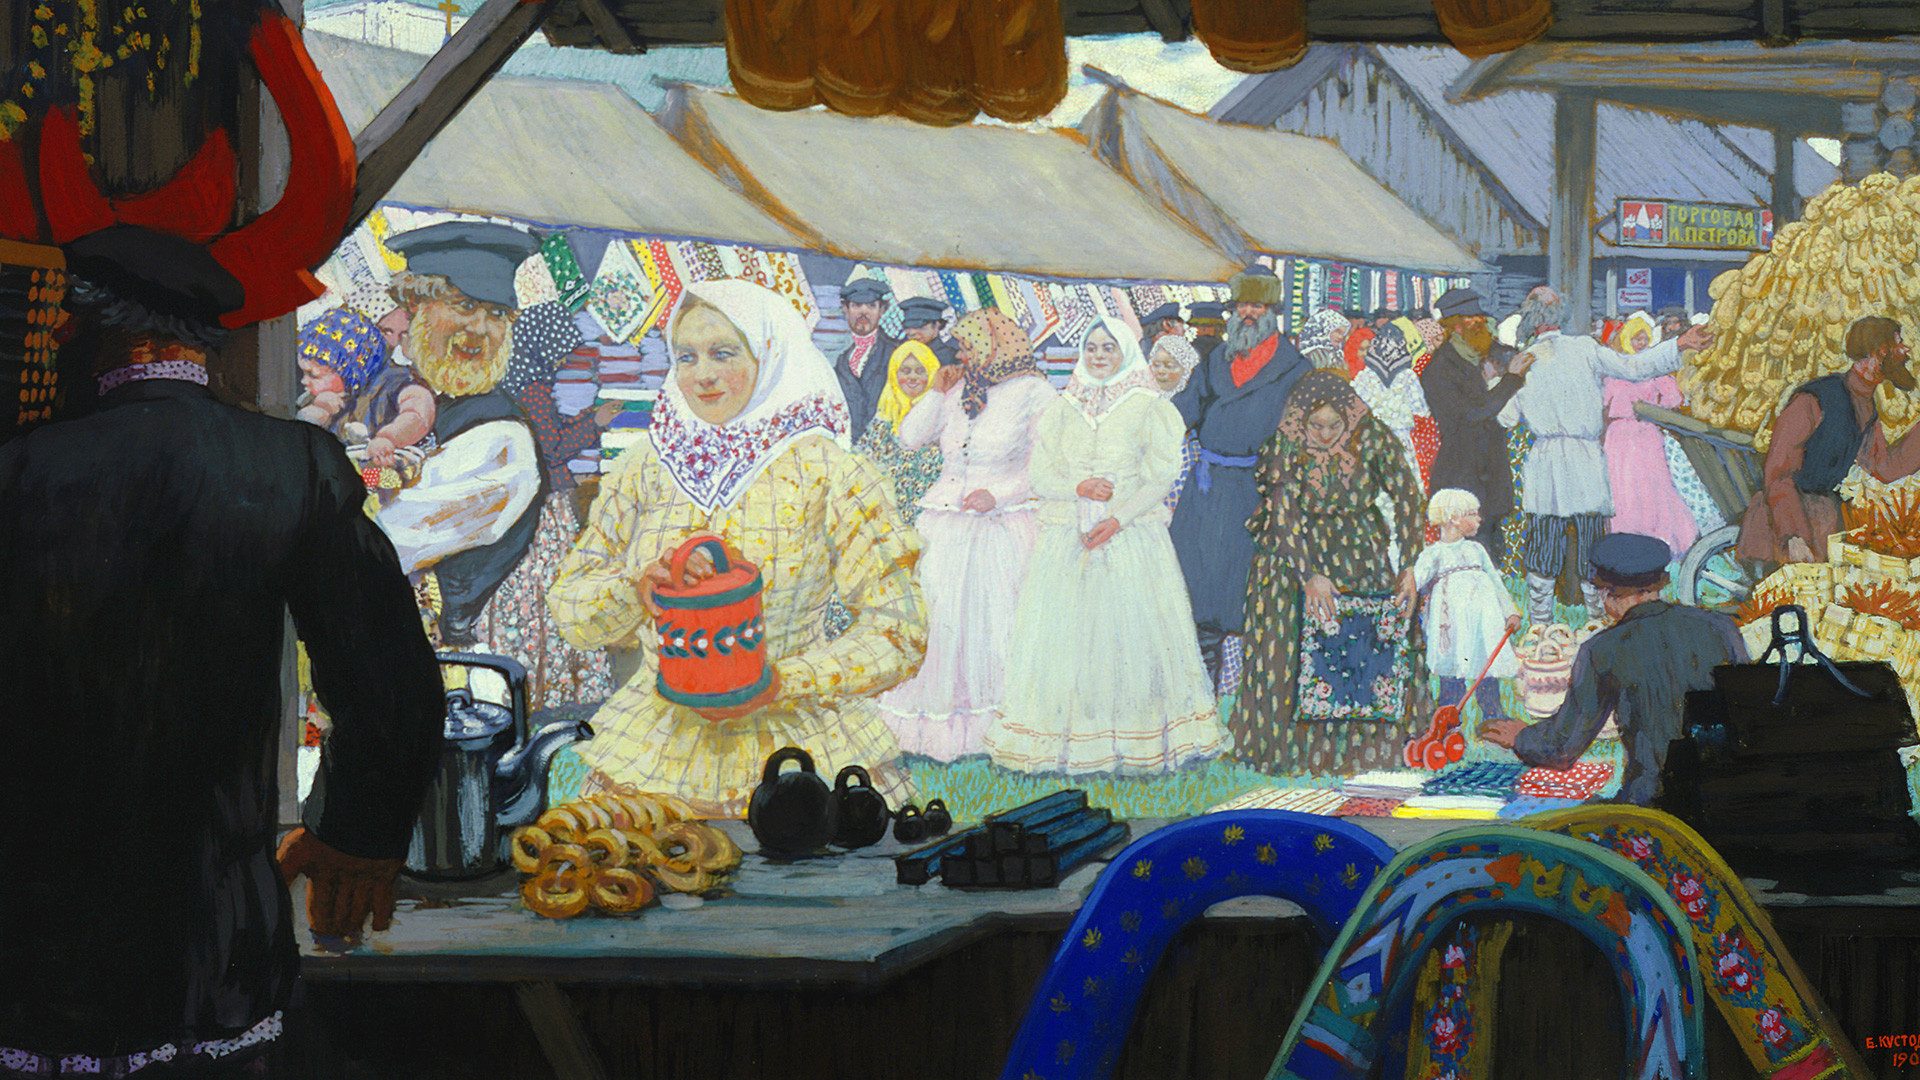 Riproduzione del dipinto “La fiera” (1908) di Boris Kustodiyev. Galleria di Stato Tretyakov